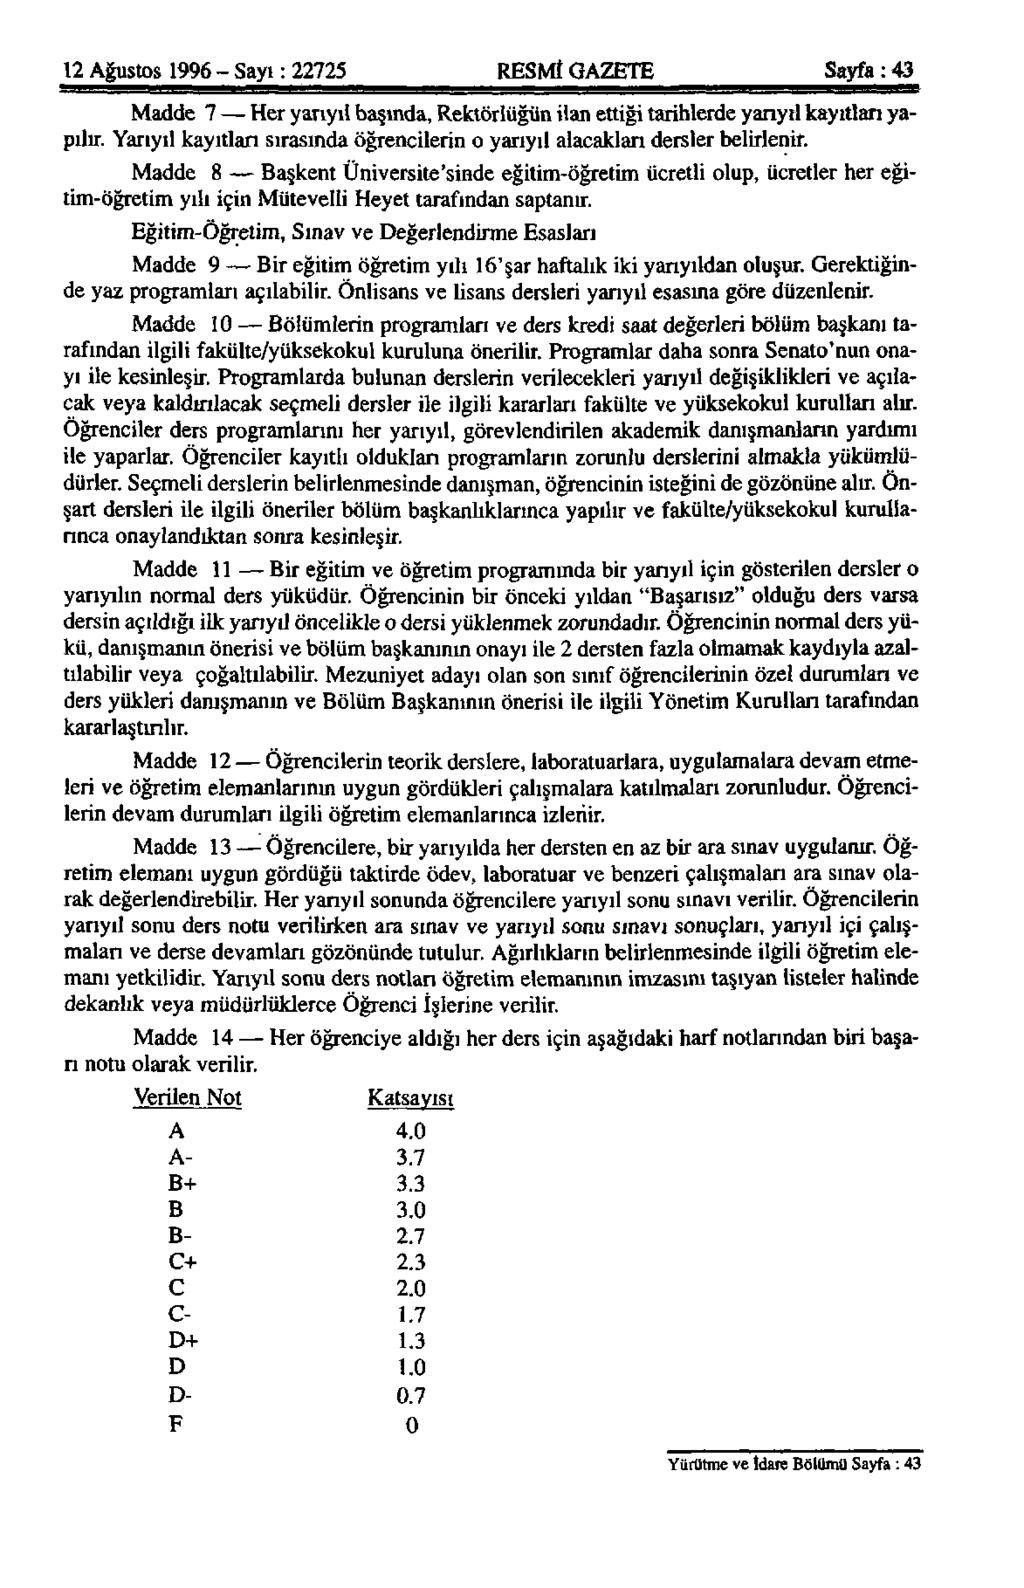 12 Ağustos 1996 - Sayı: 22725 RESMİ GAZETE Sayfa: 43 Madde 7 Her yarıyıl başında, Rektörlüğün ilan ettiği tarihlerde yarıyıl kayıtları yapılır.